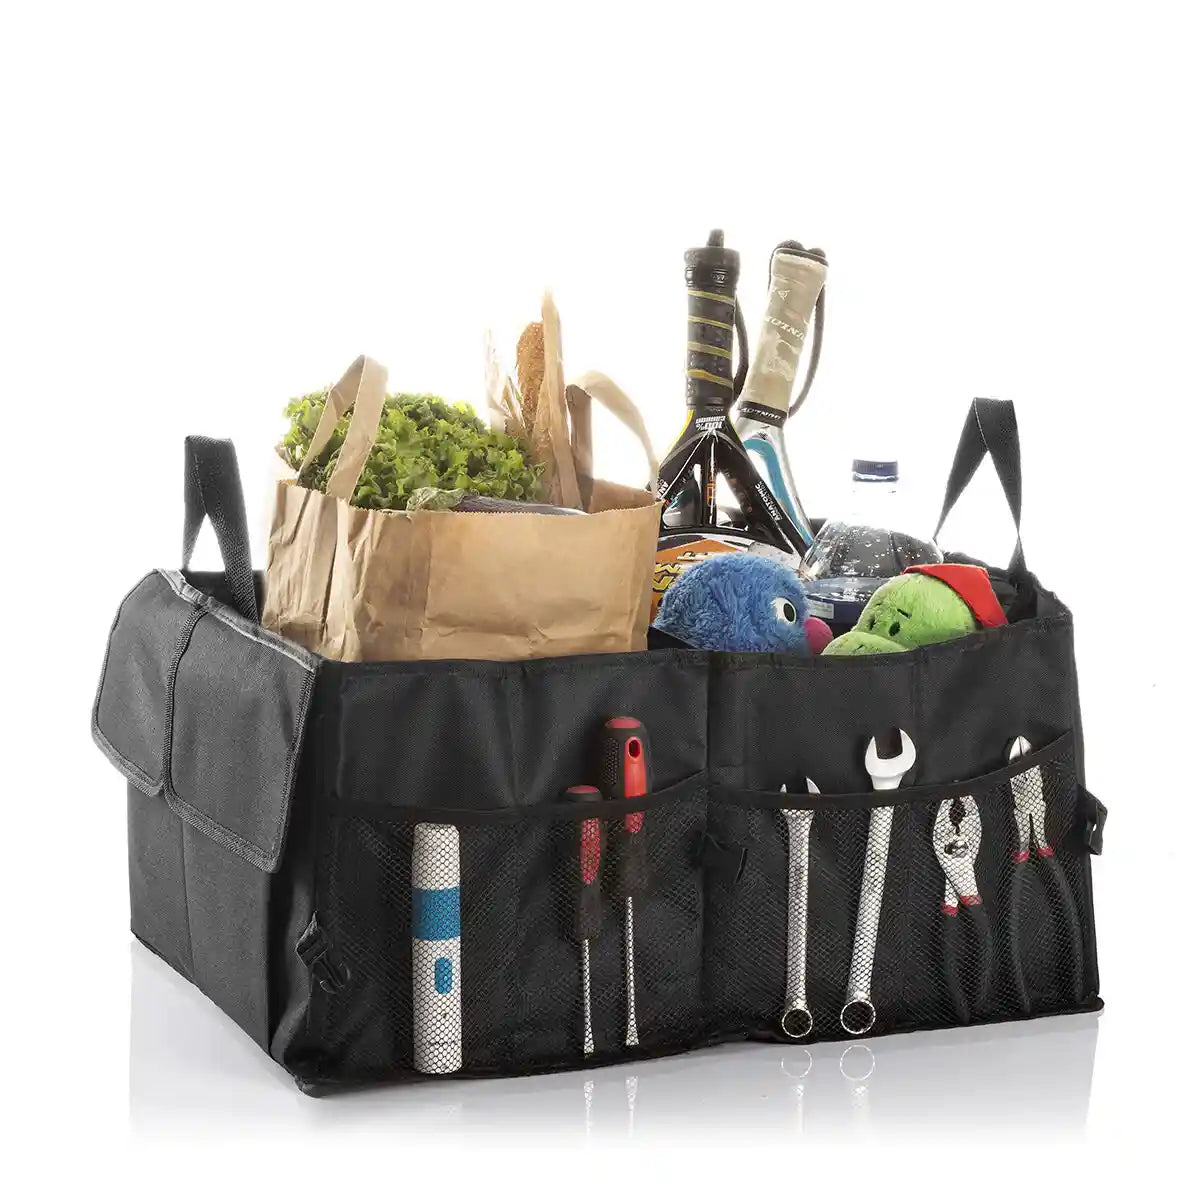 Stor bagasjeorganisator fylt med alt fra mat, sportsutstyr, verktøy eller kosebamser